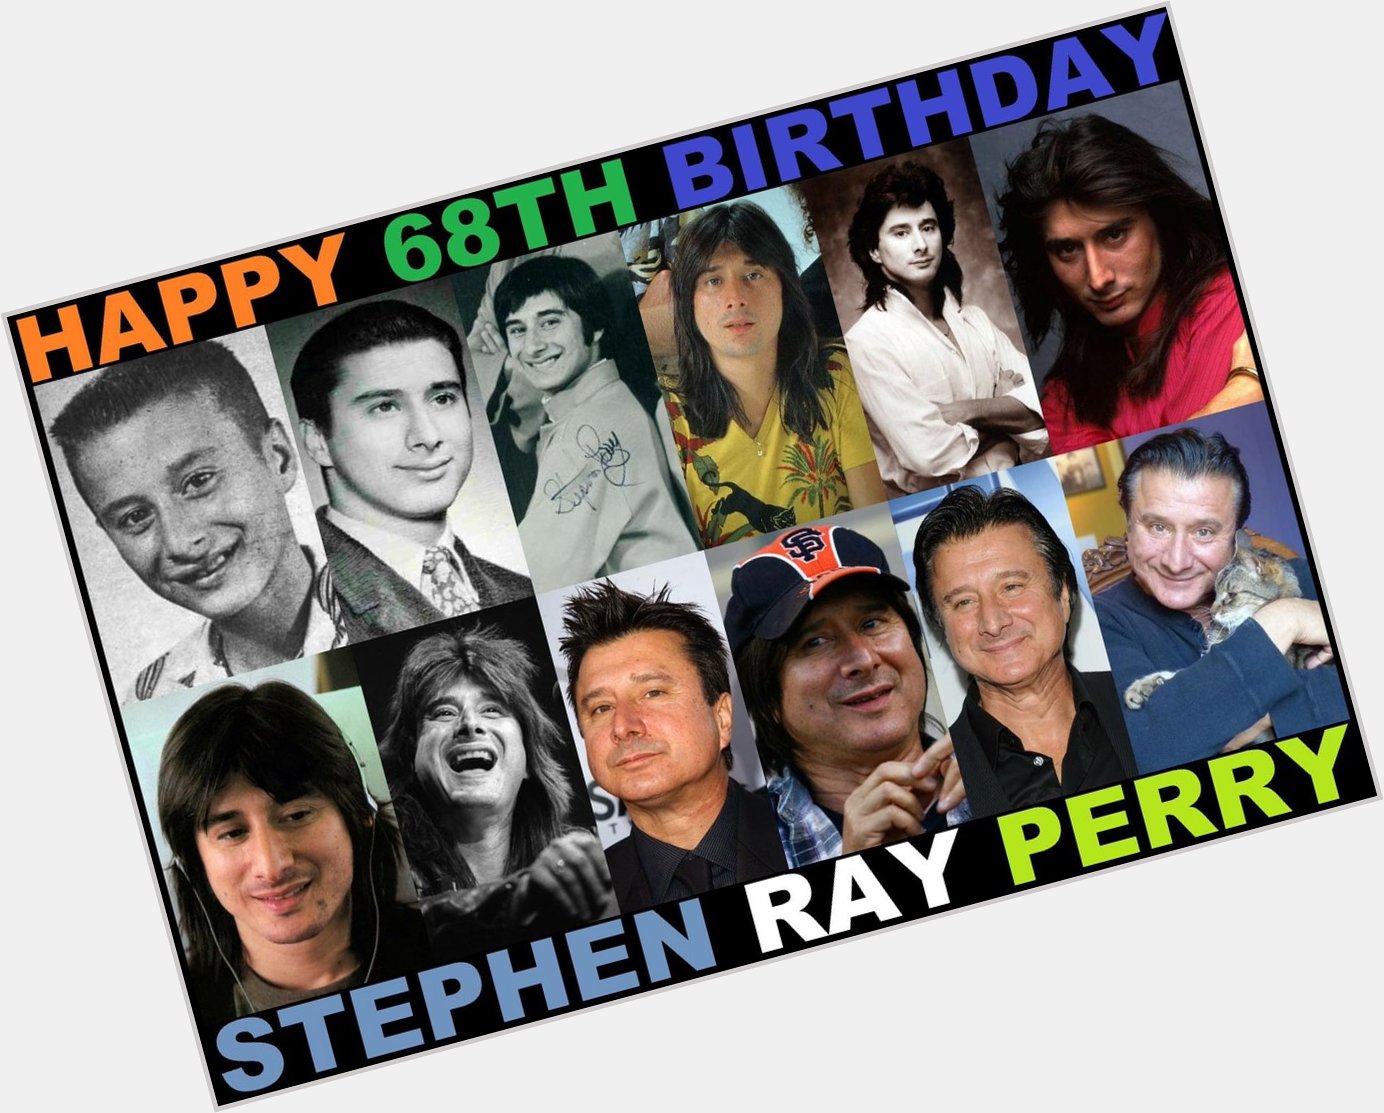 Happy Birthday Steve Perry 